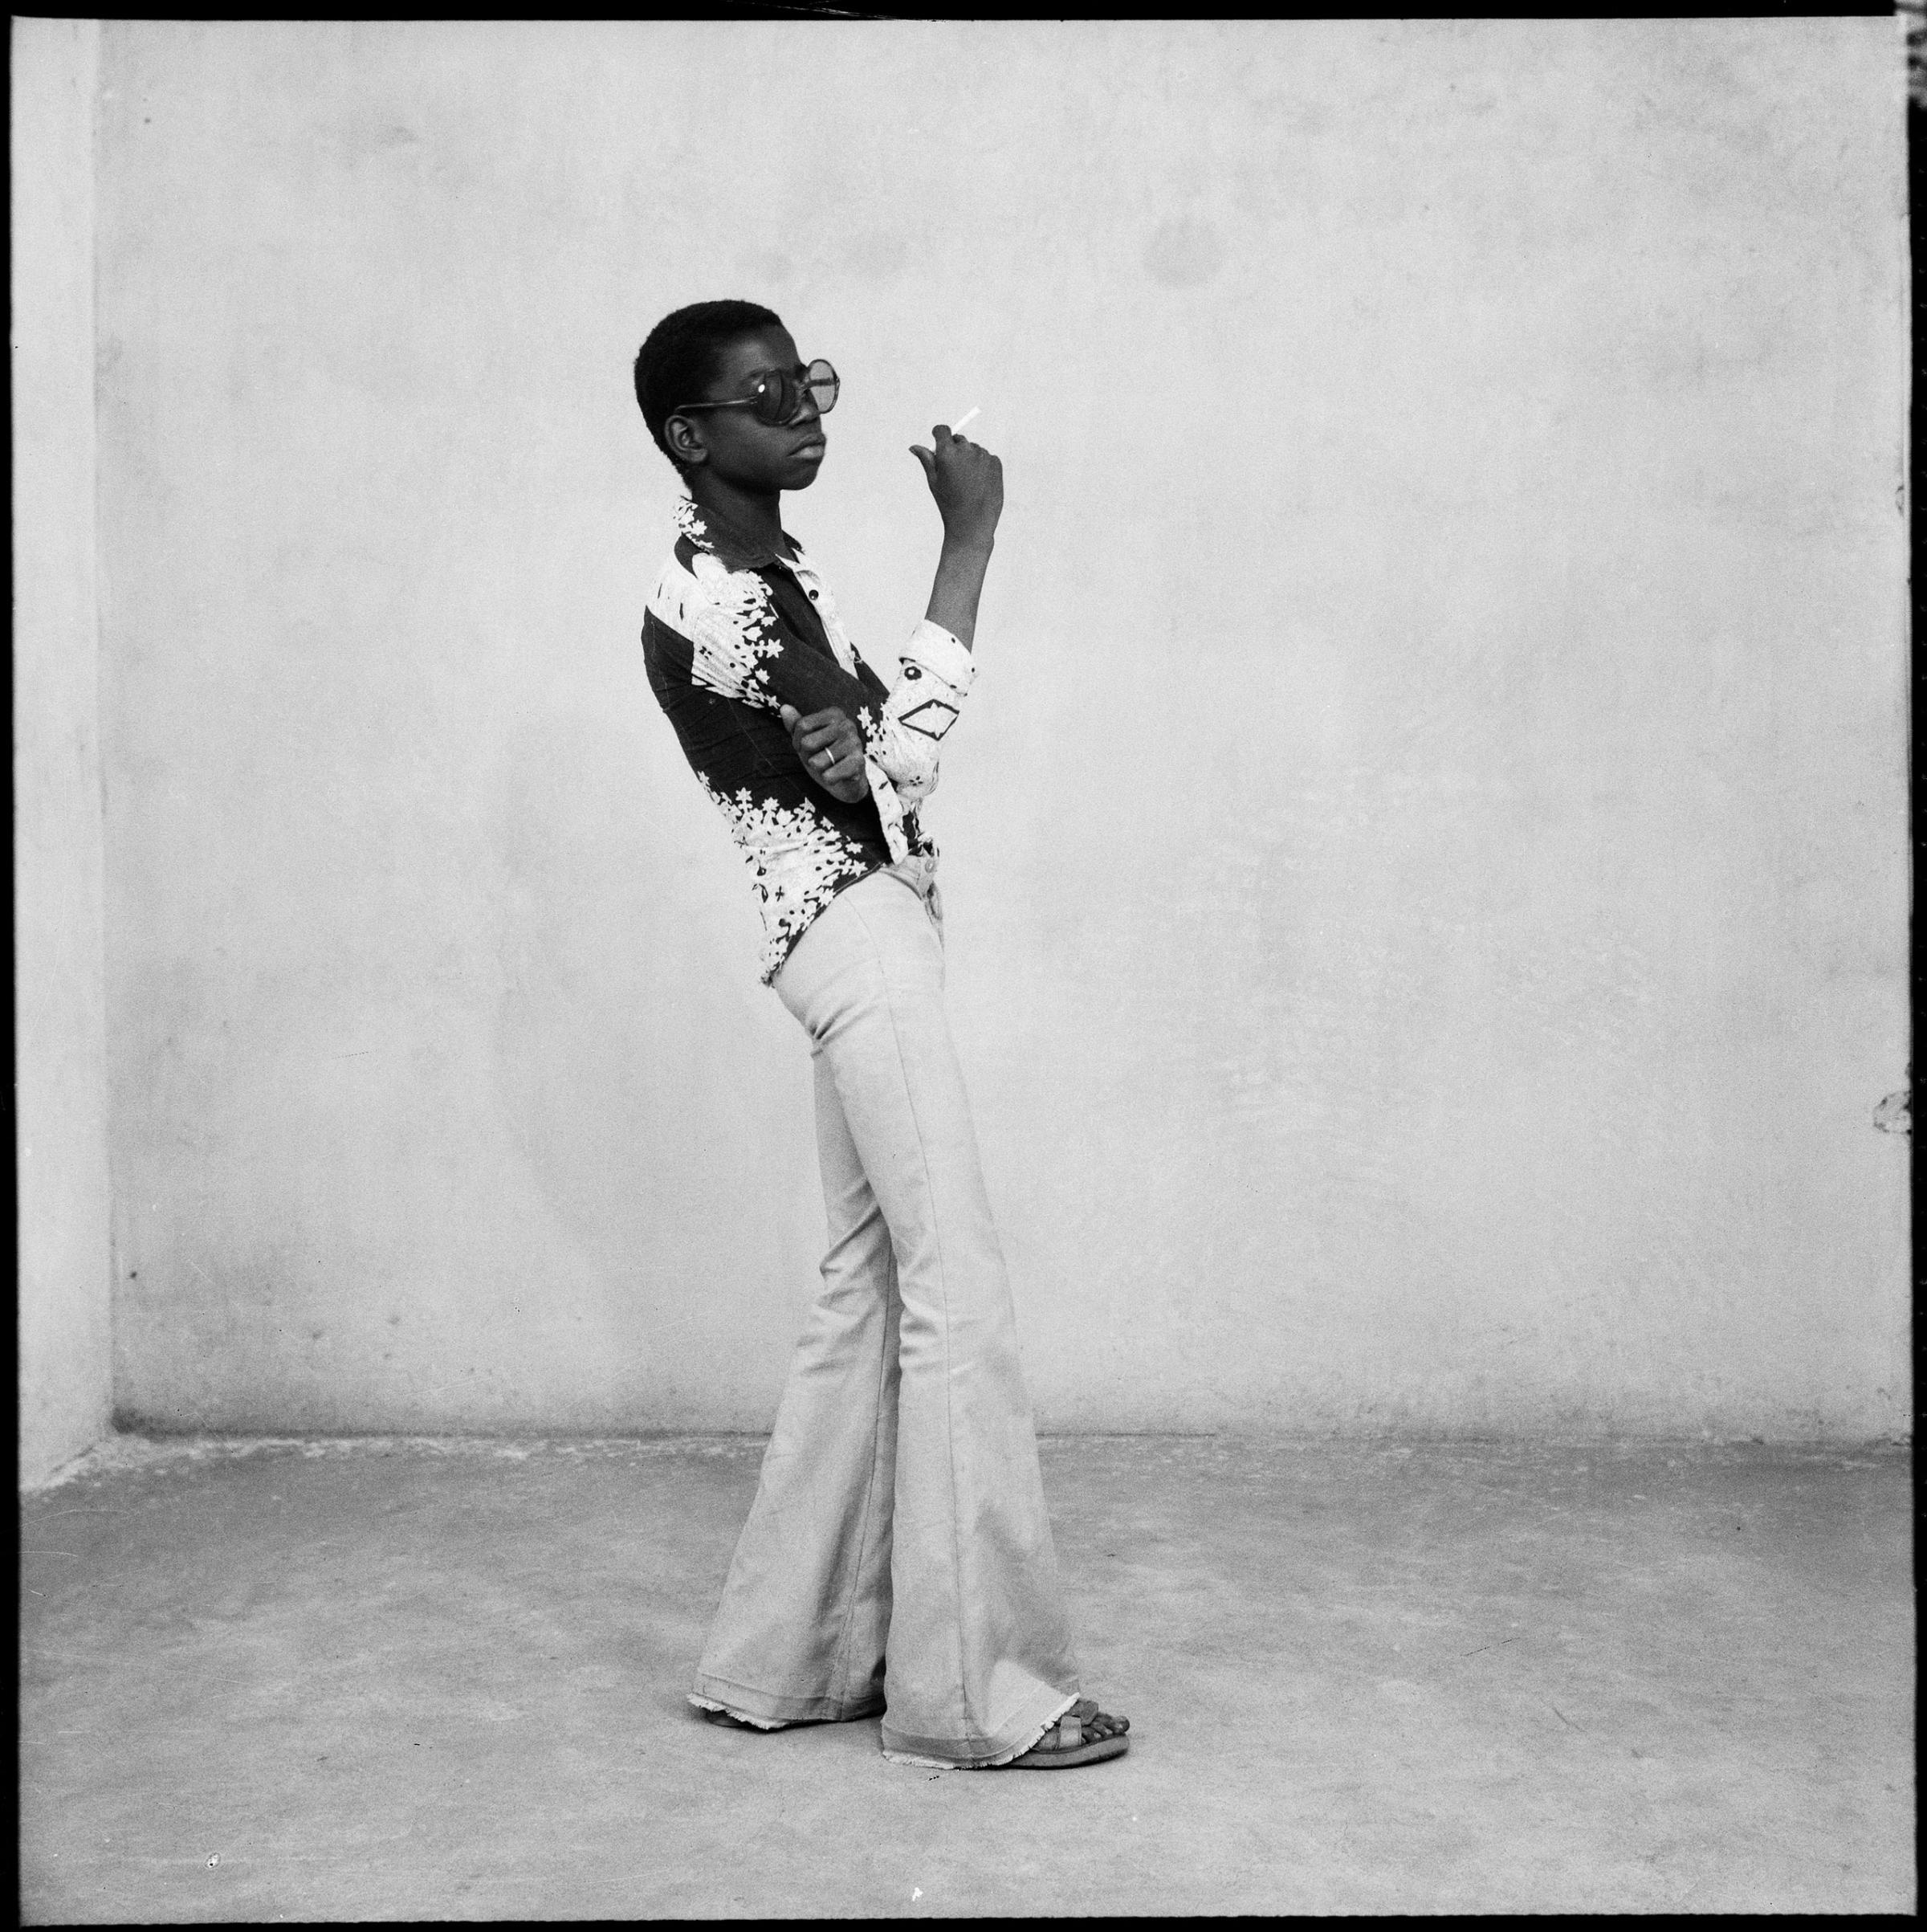 Photograph by Malick Sidibe, Yéyé en position, 1963.